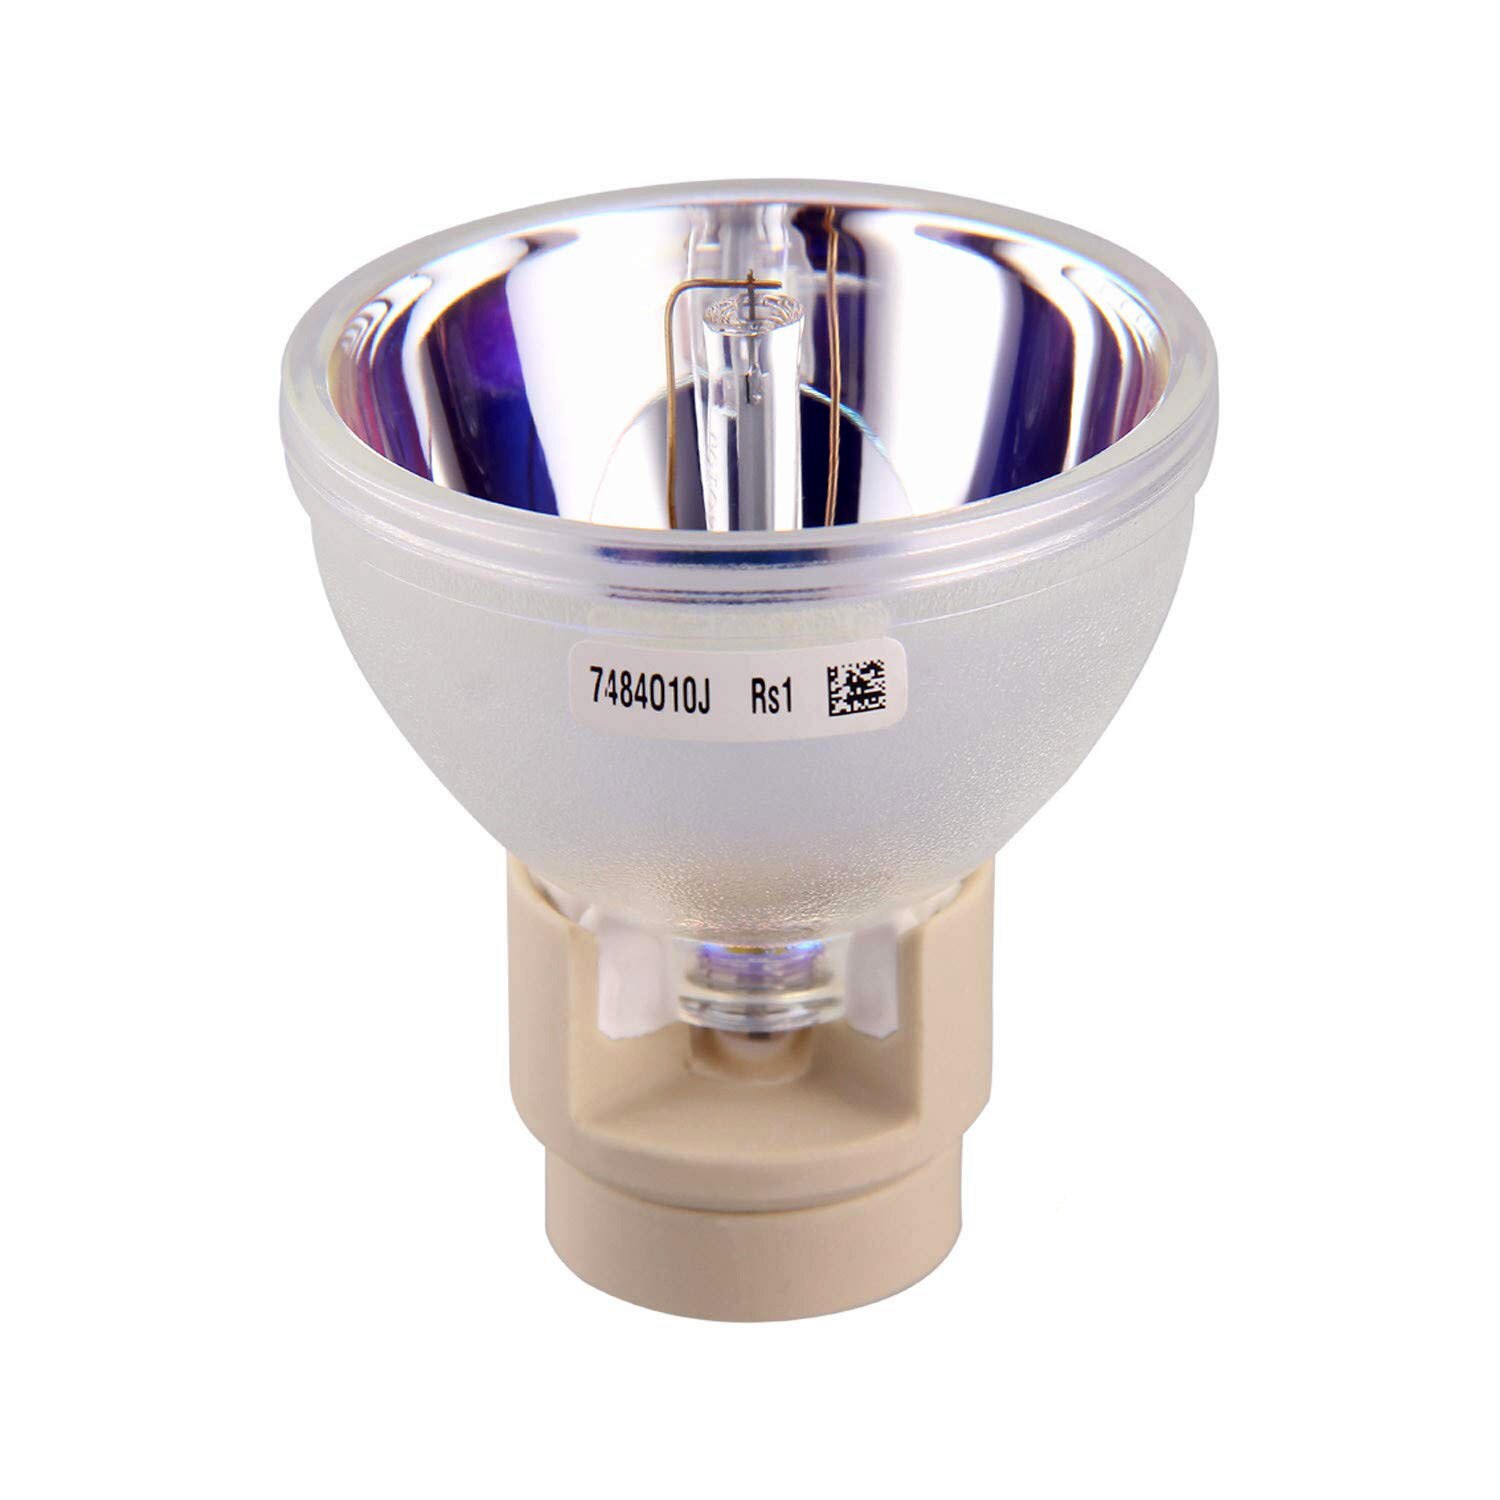 5J. JFG05.001 hochwertigen Projektor Lampe mit Gehäbenutzen passen für BENQ MH750, SH753, SU754, SW752, SX751 projektoren: 5J.JFG05.001-CB